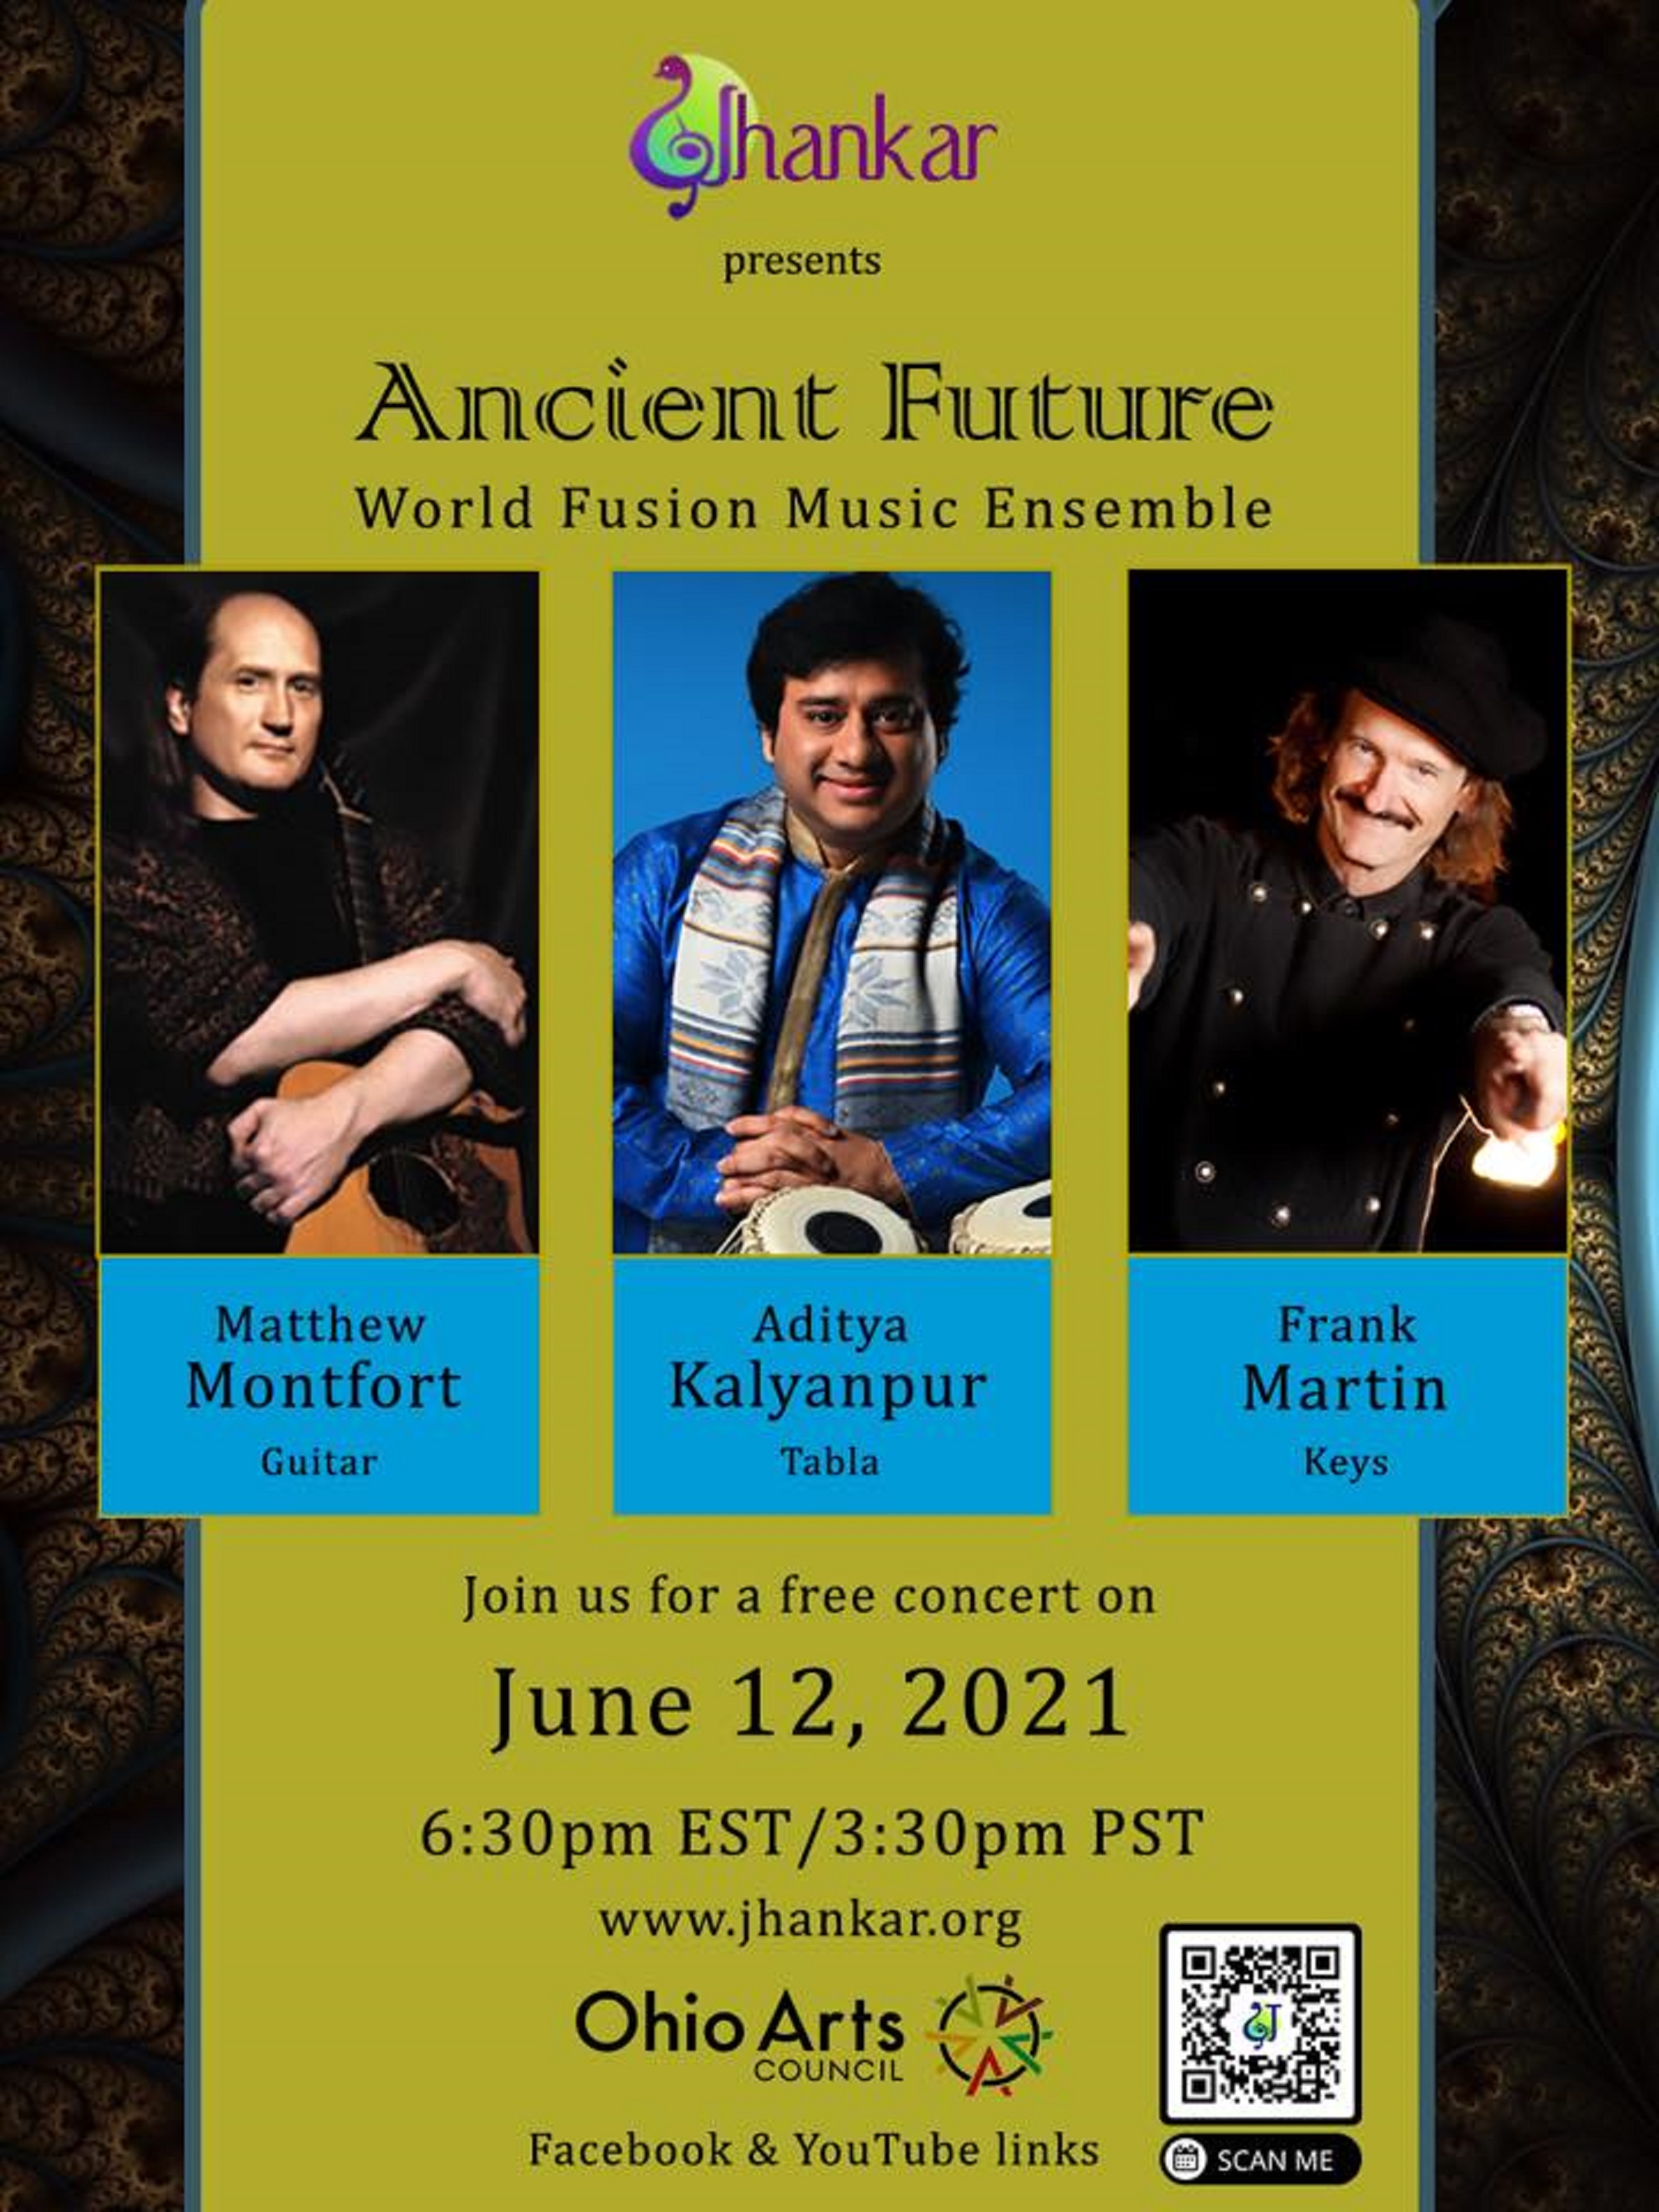 Ancient Future Concert Streams Live June 12